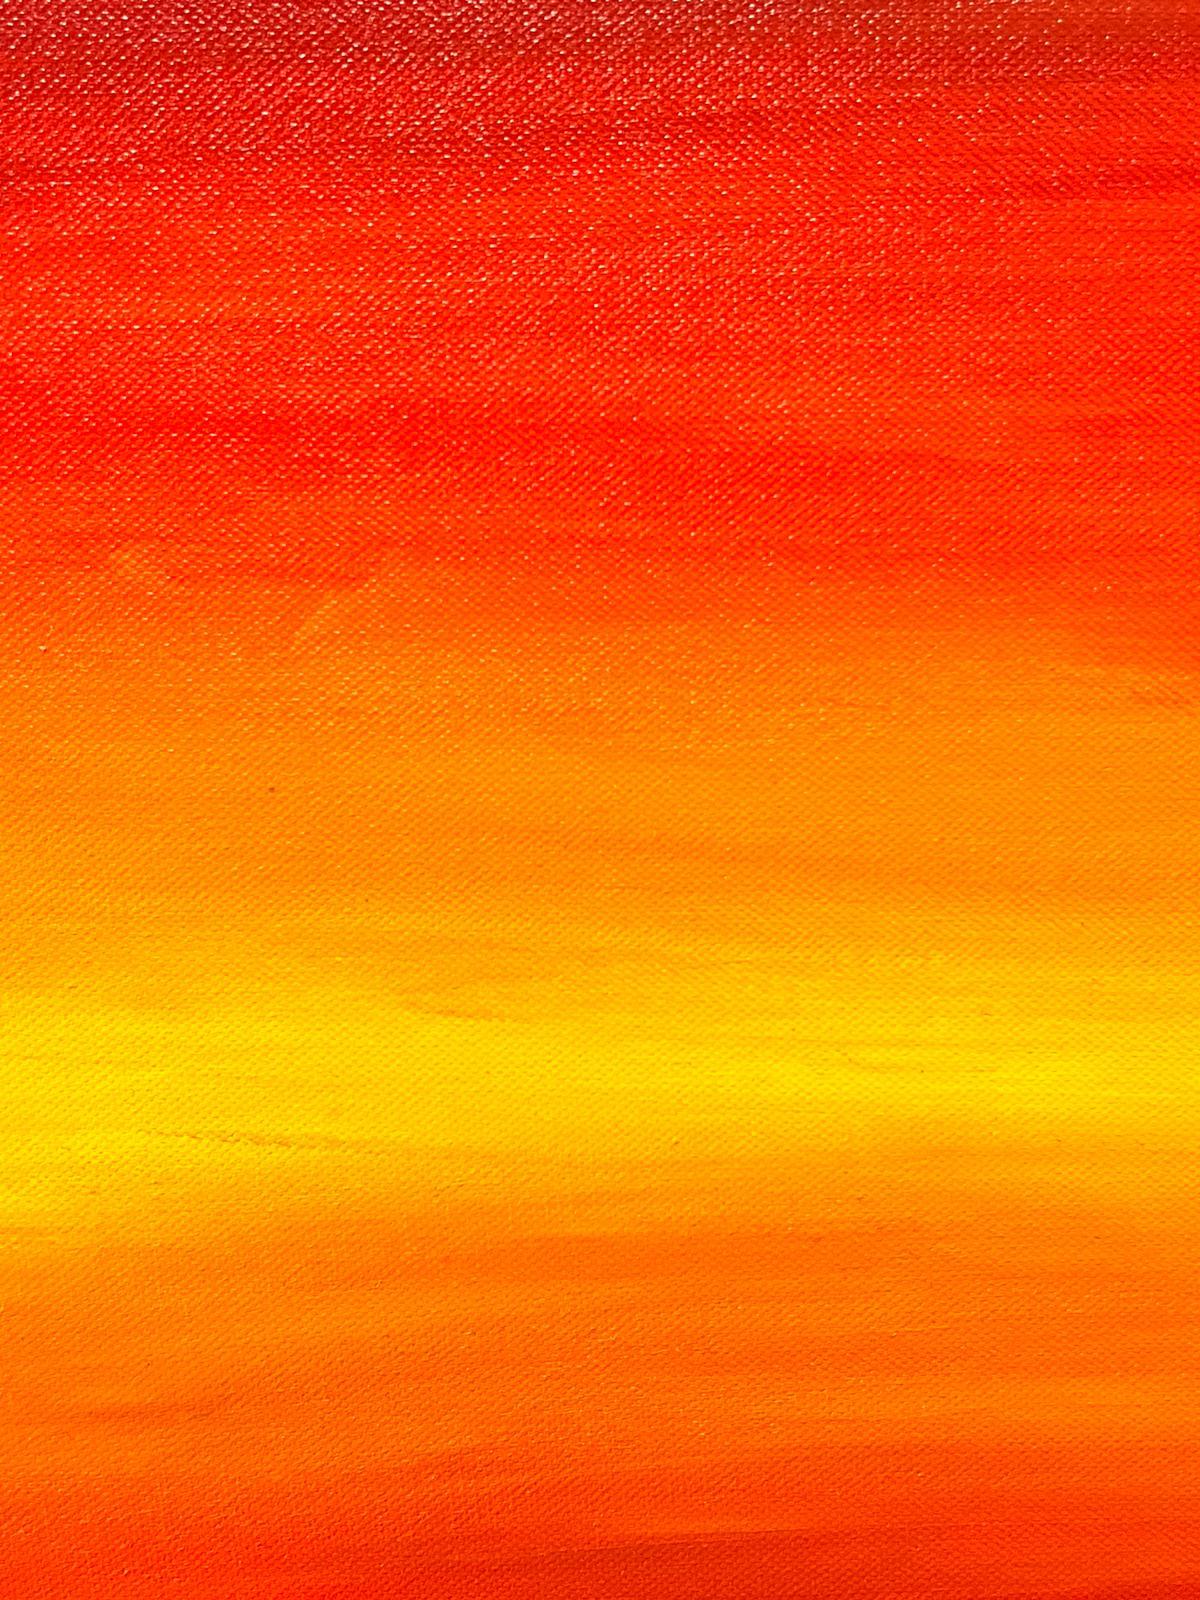 Großes zeitgenössisches britisches modernistisches Gemälde mit Sonnenuntergang und Farbblaze (Abstrakt), Painting, von Contemporary British 